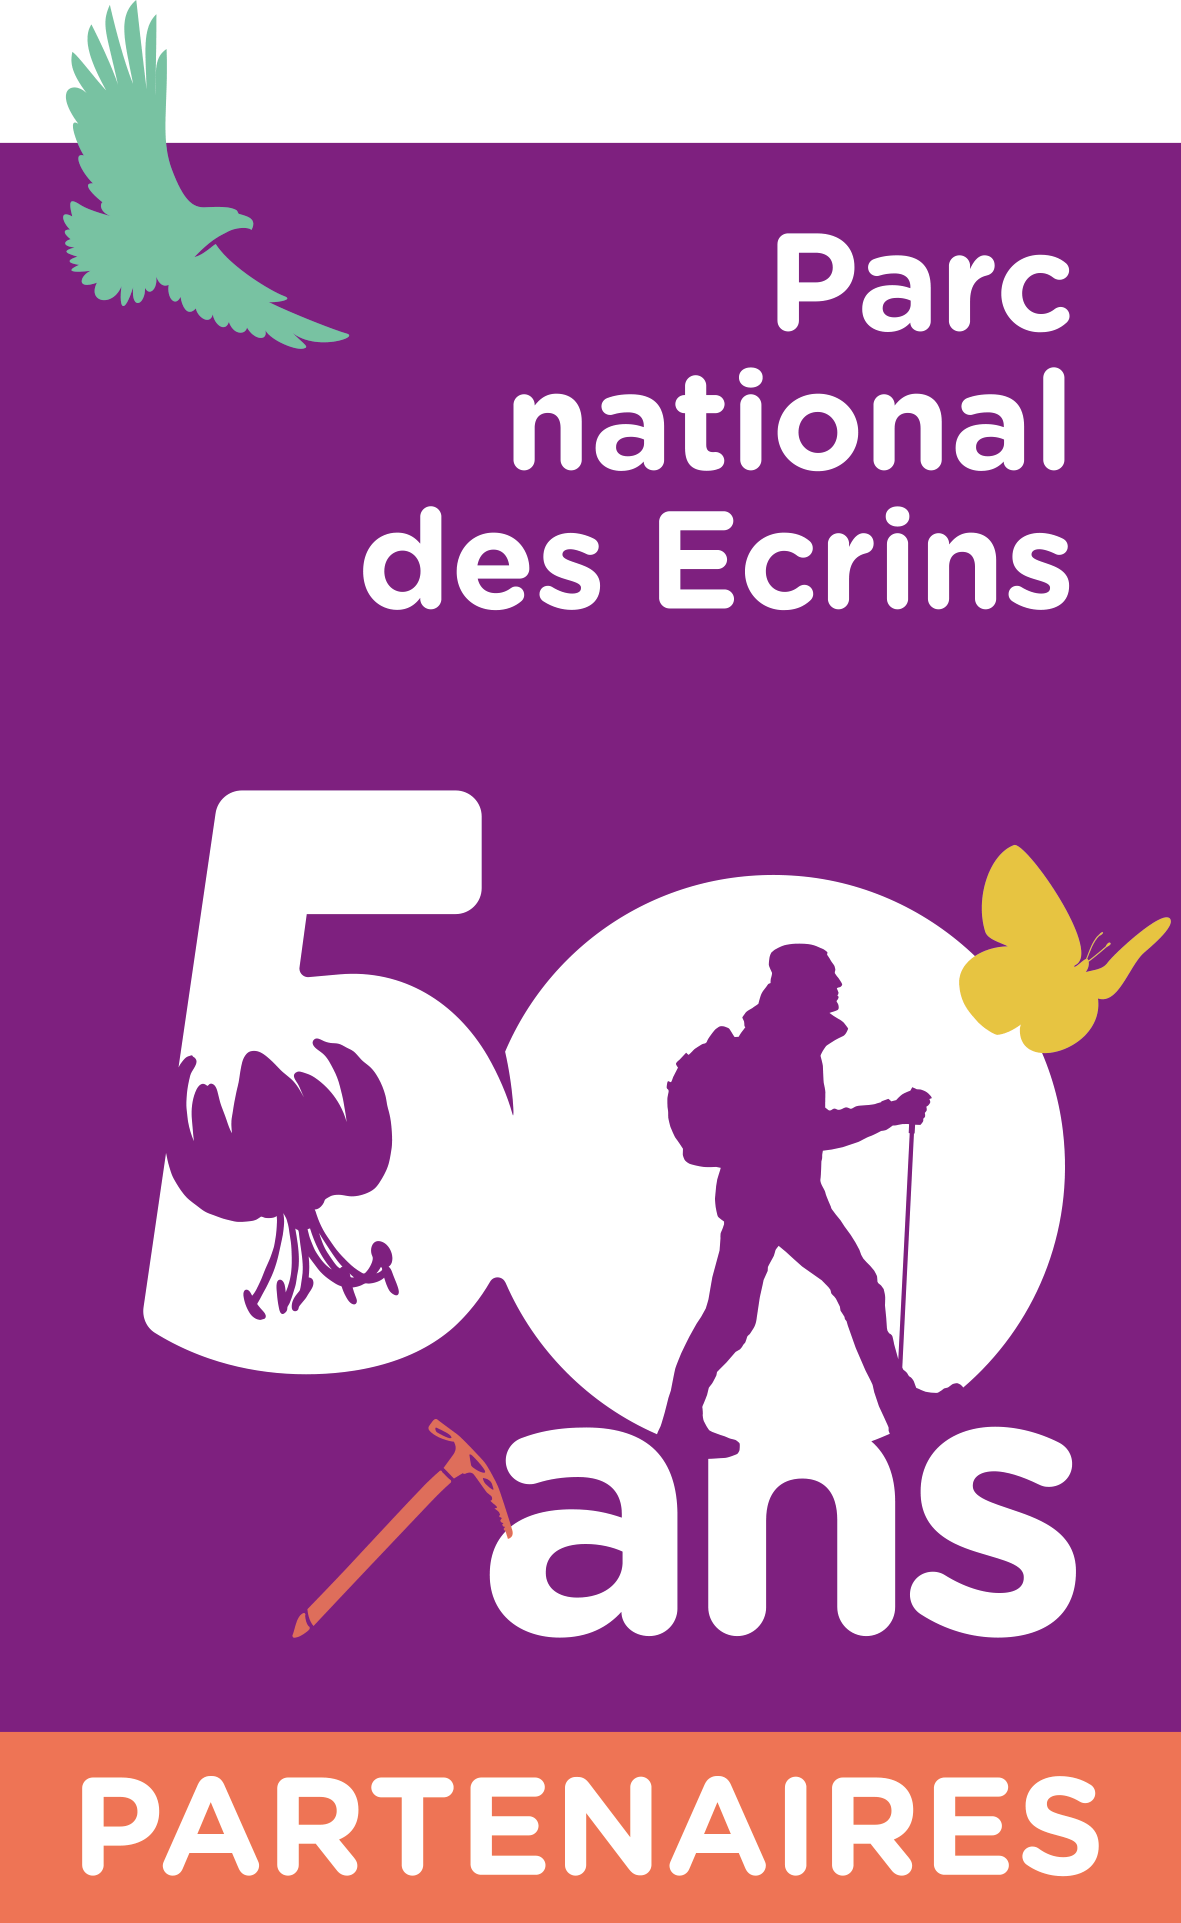 évènement partenaire des 50 ans du parc national des Écrins